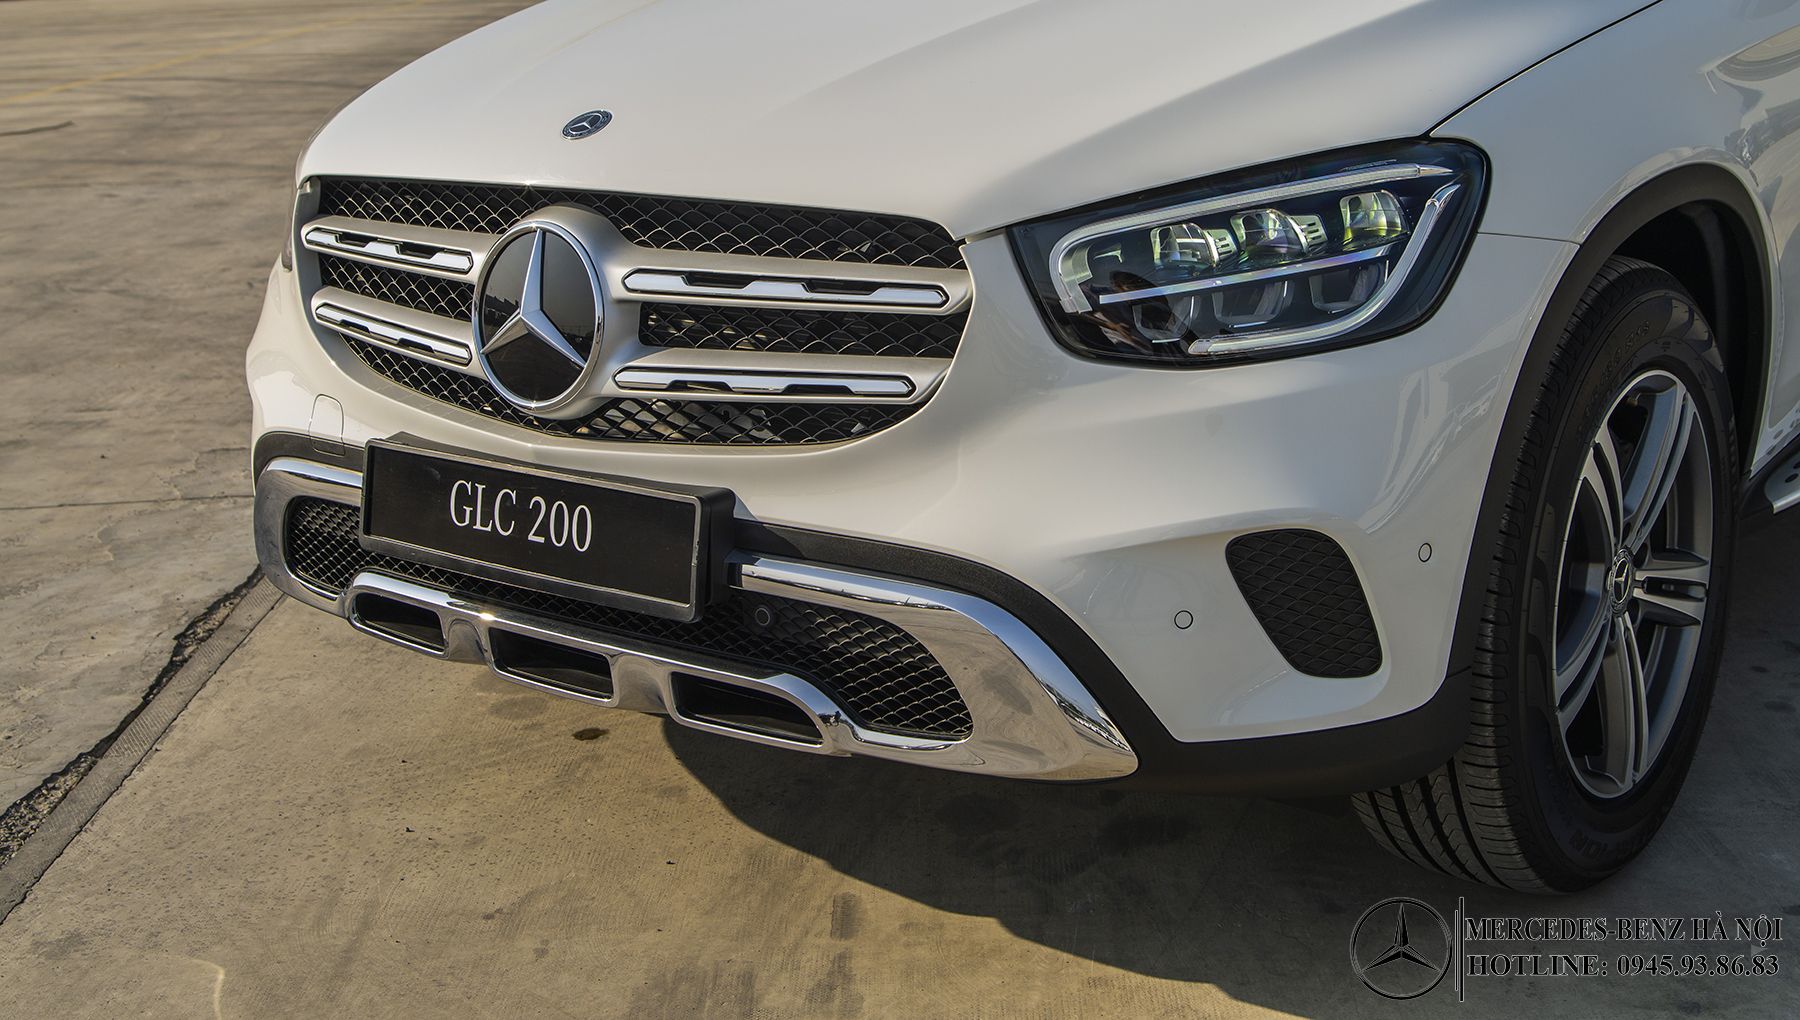 dau-xe-Mercedes-Benz-GLC-200-2020_mercedeshanoi-com-vn (4)